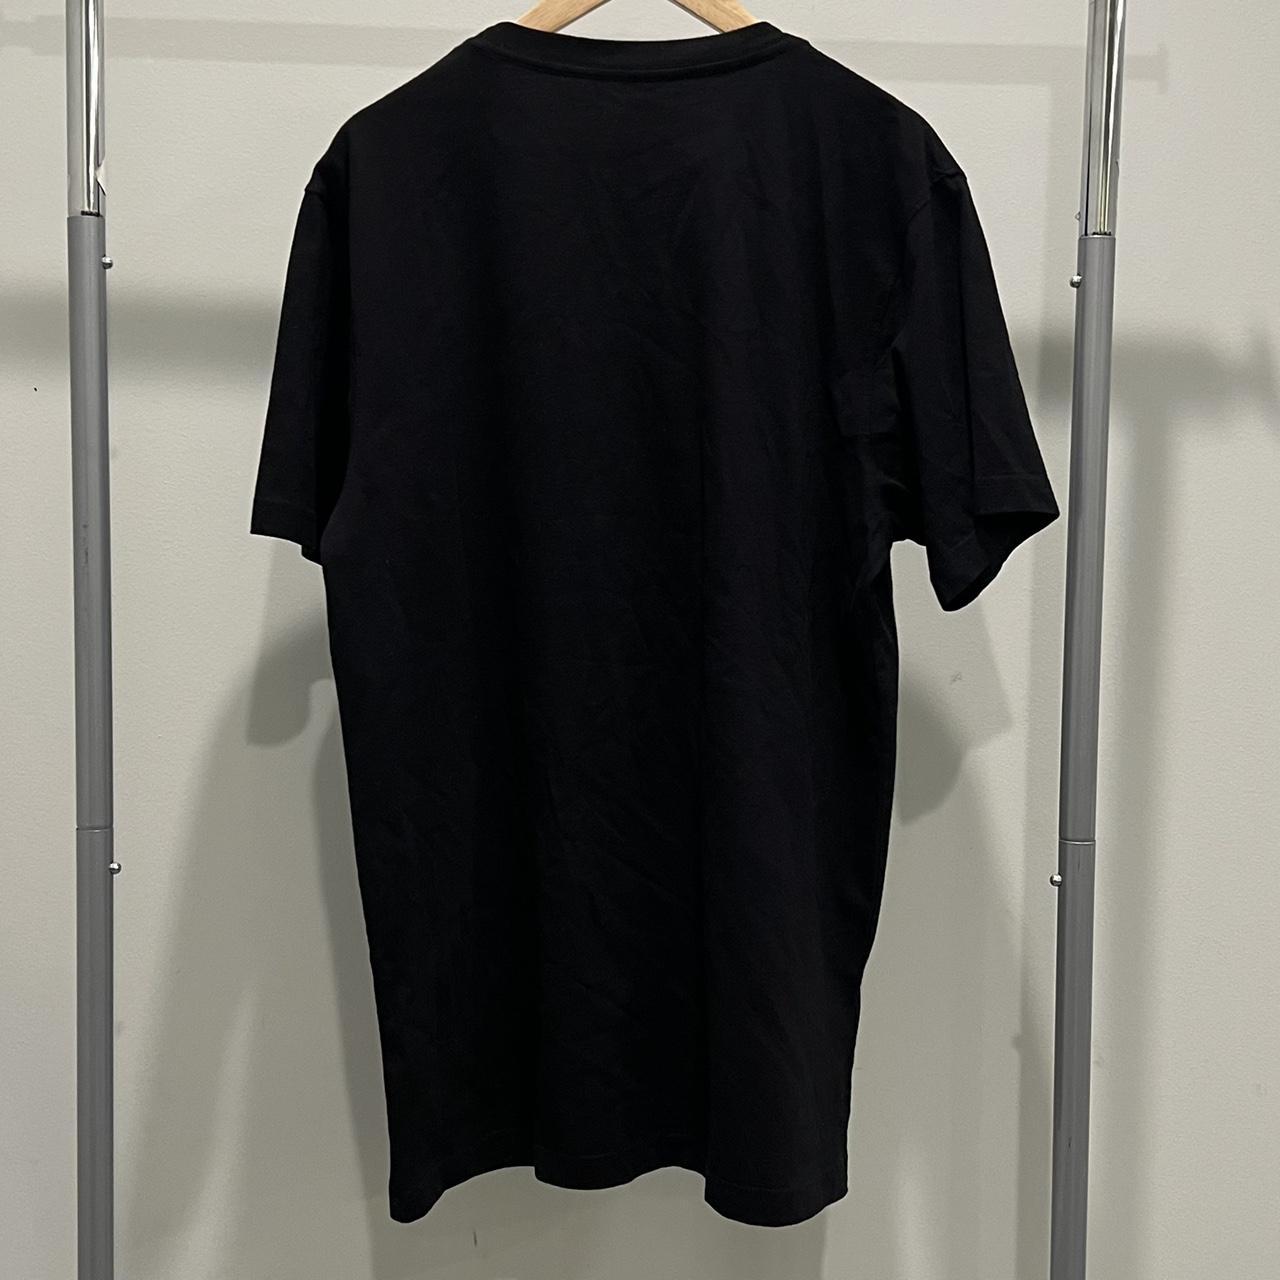 Maharishi Men's Black T-shirt (2)